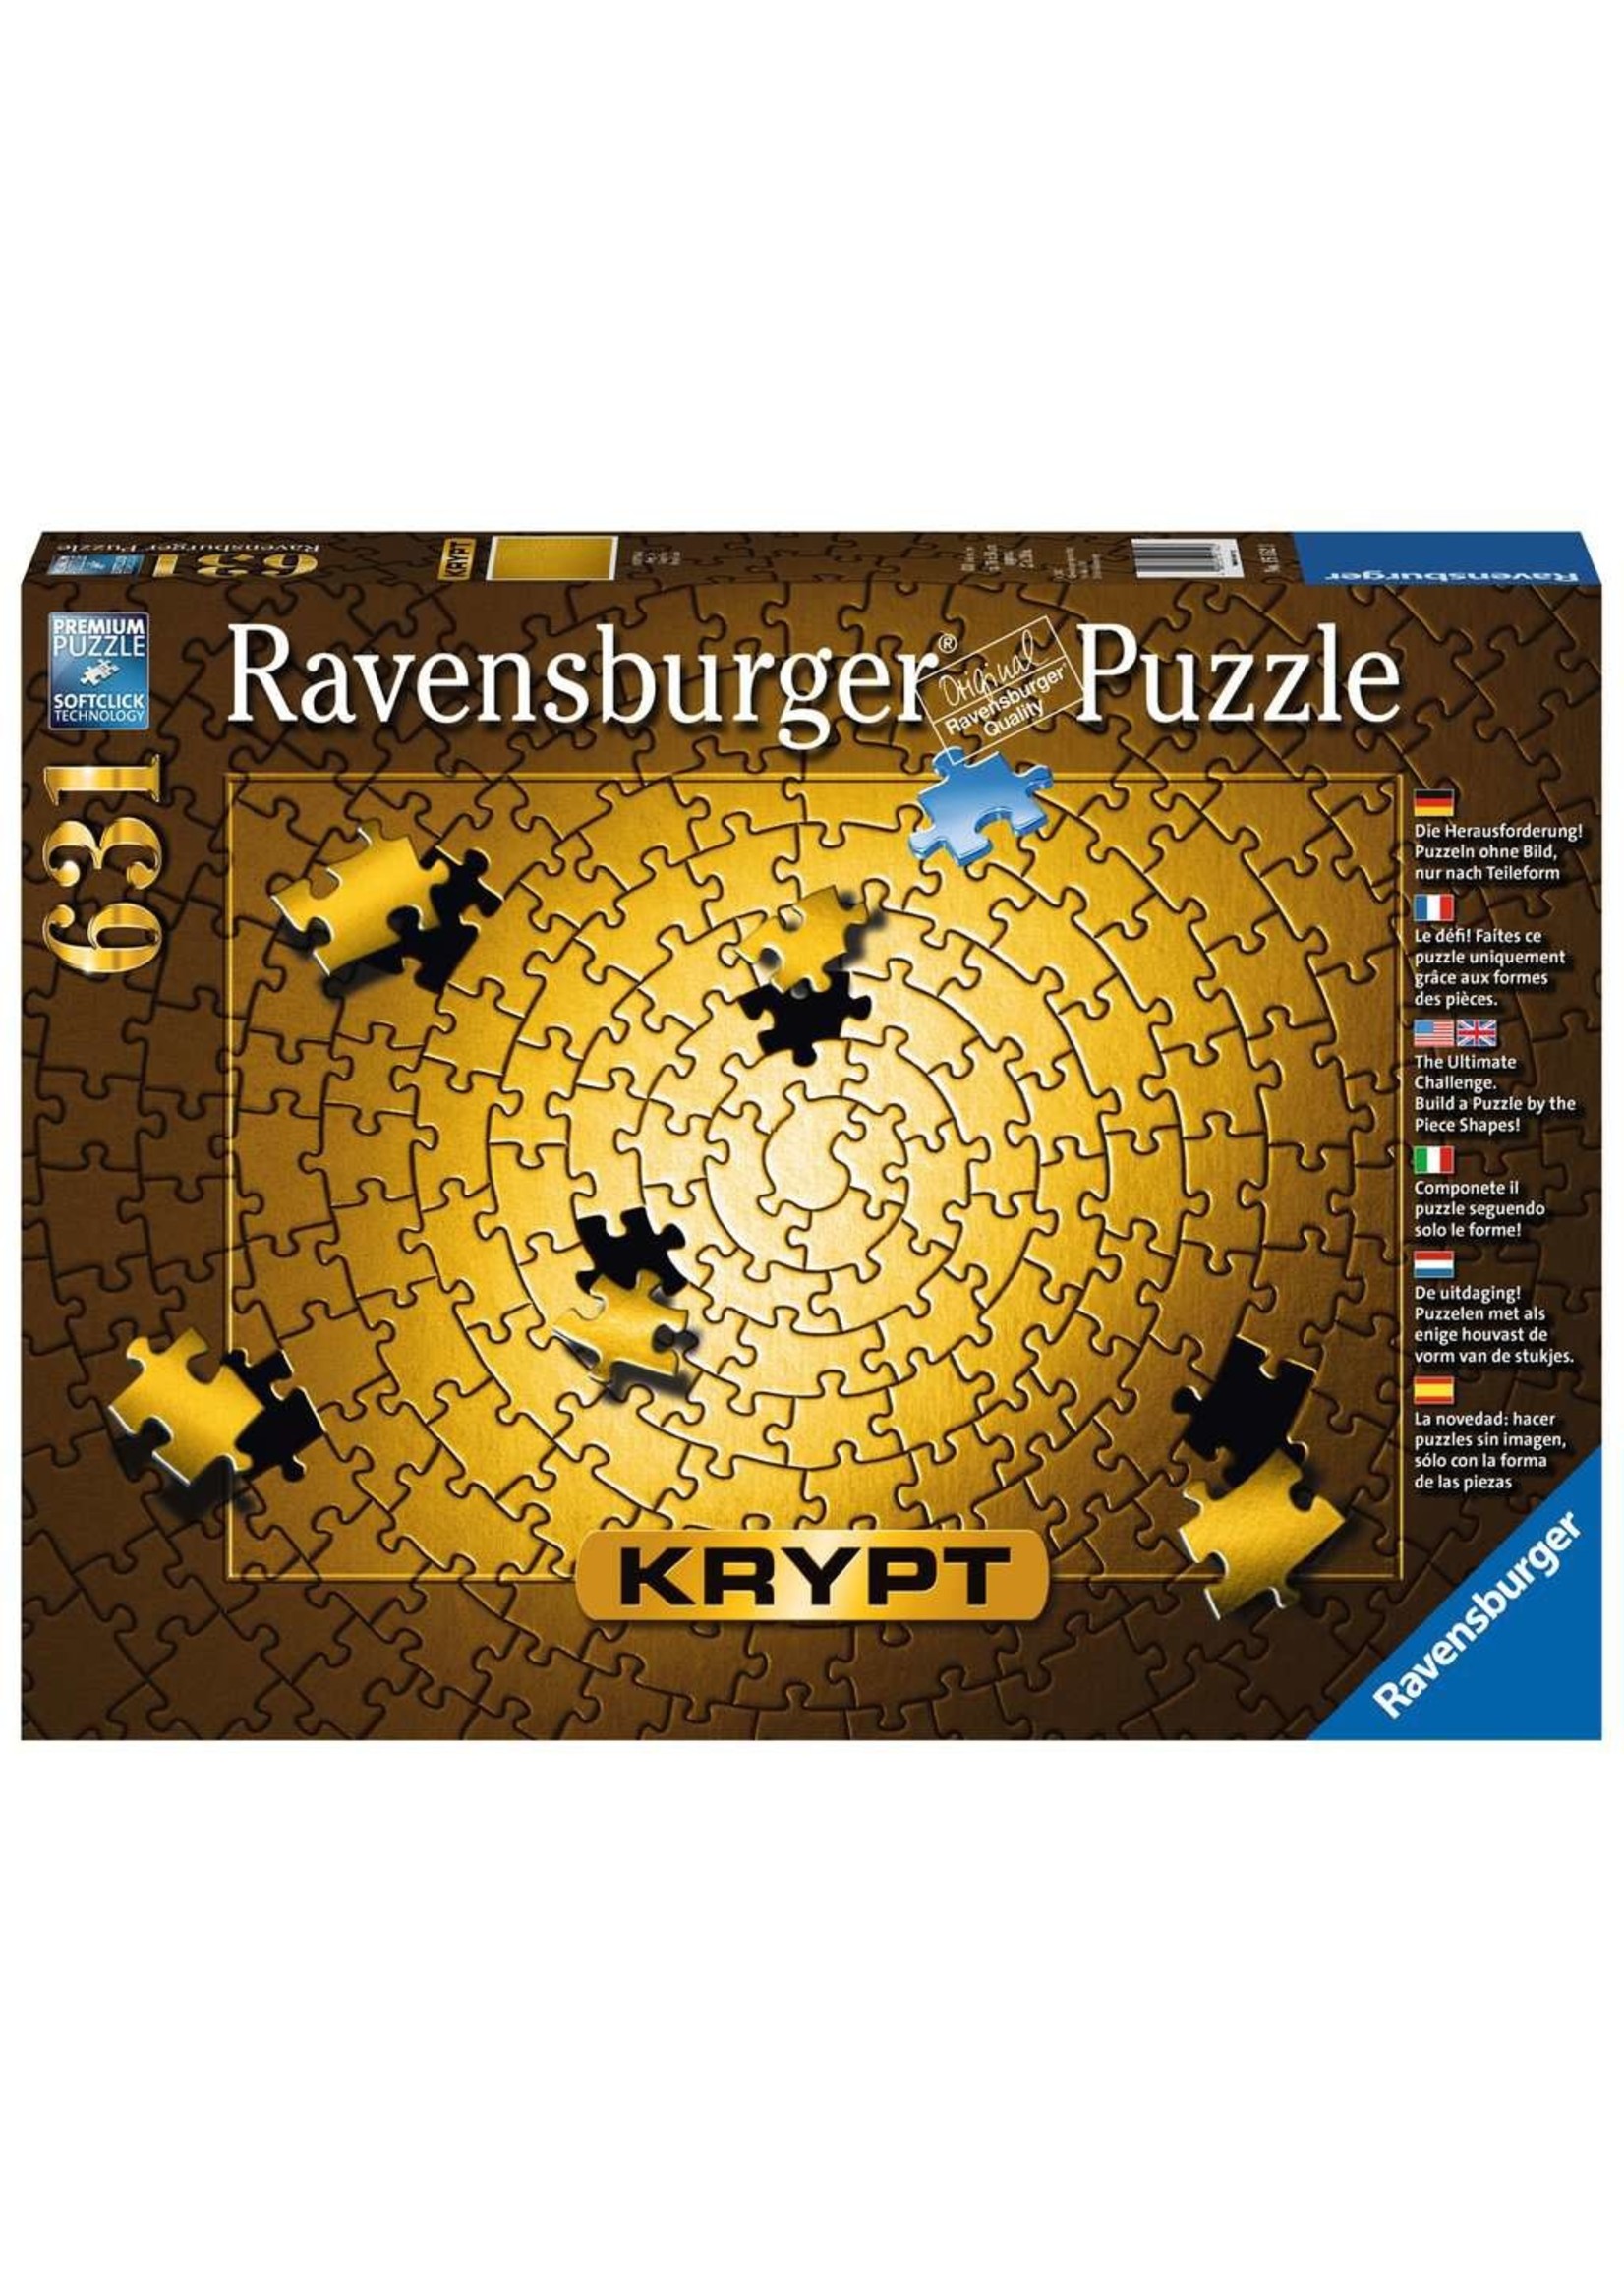 Ravensburger Puzzle Ravensburger 631 pcs Krypt Gold